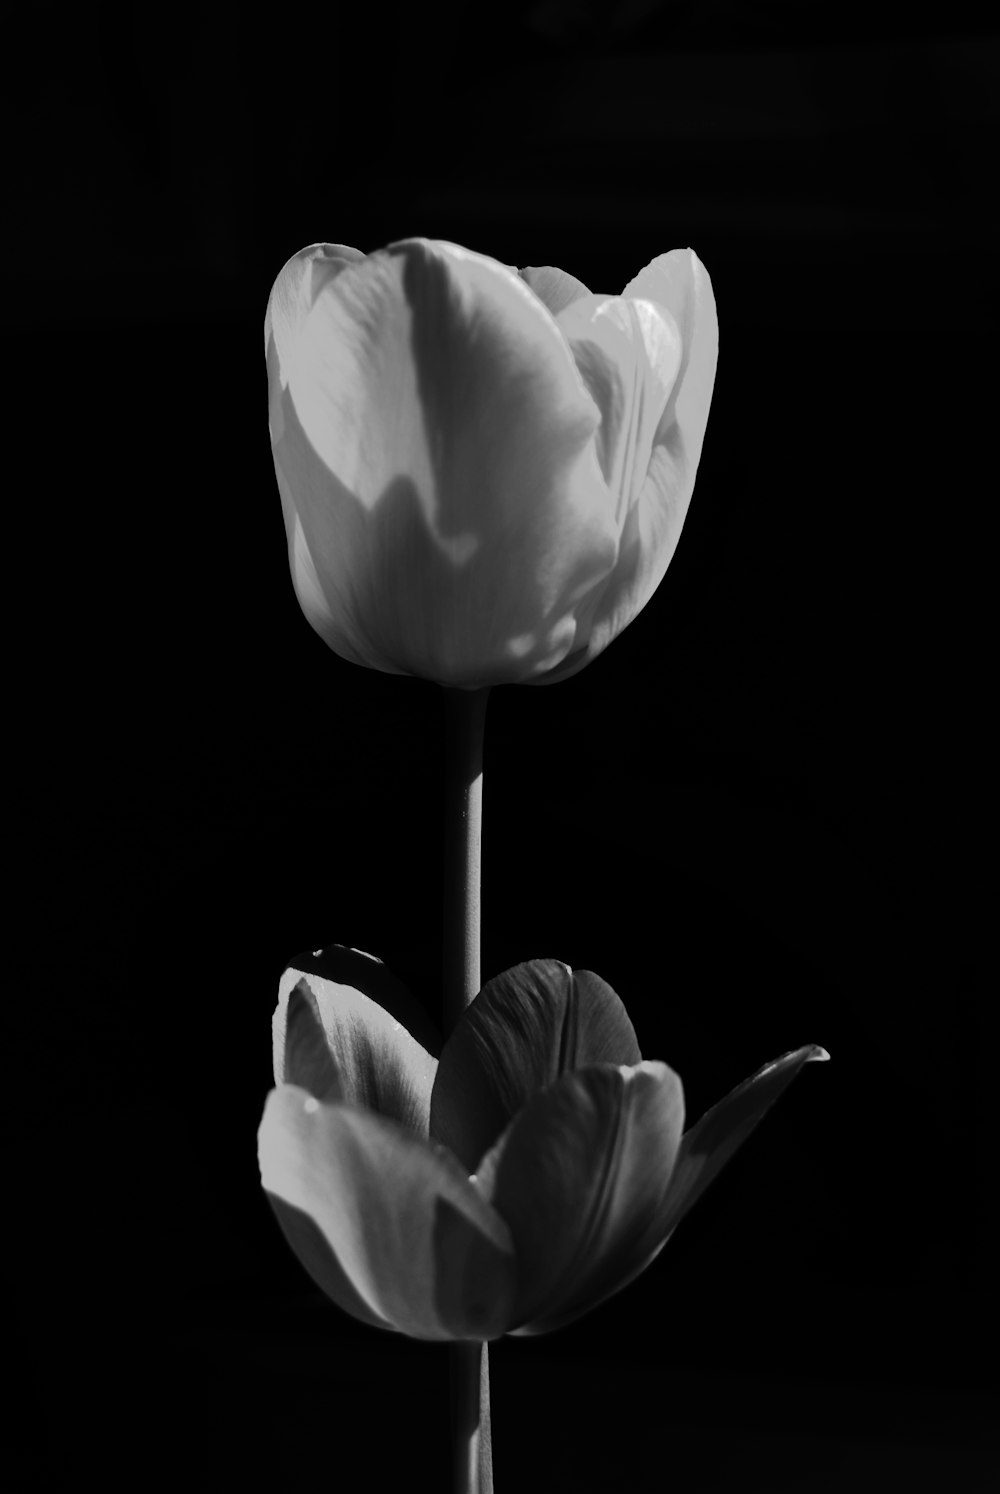 Foto tulipán blanco en fondo negro – Imagen Ucrania gratis en Unsplash